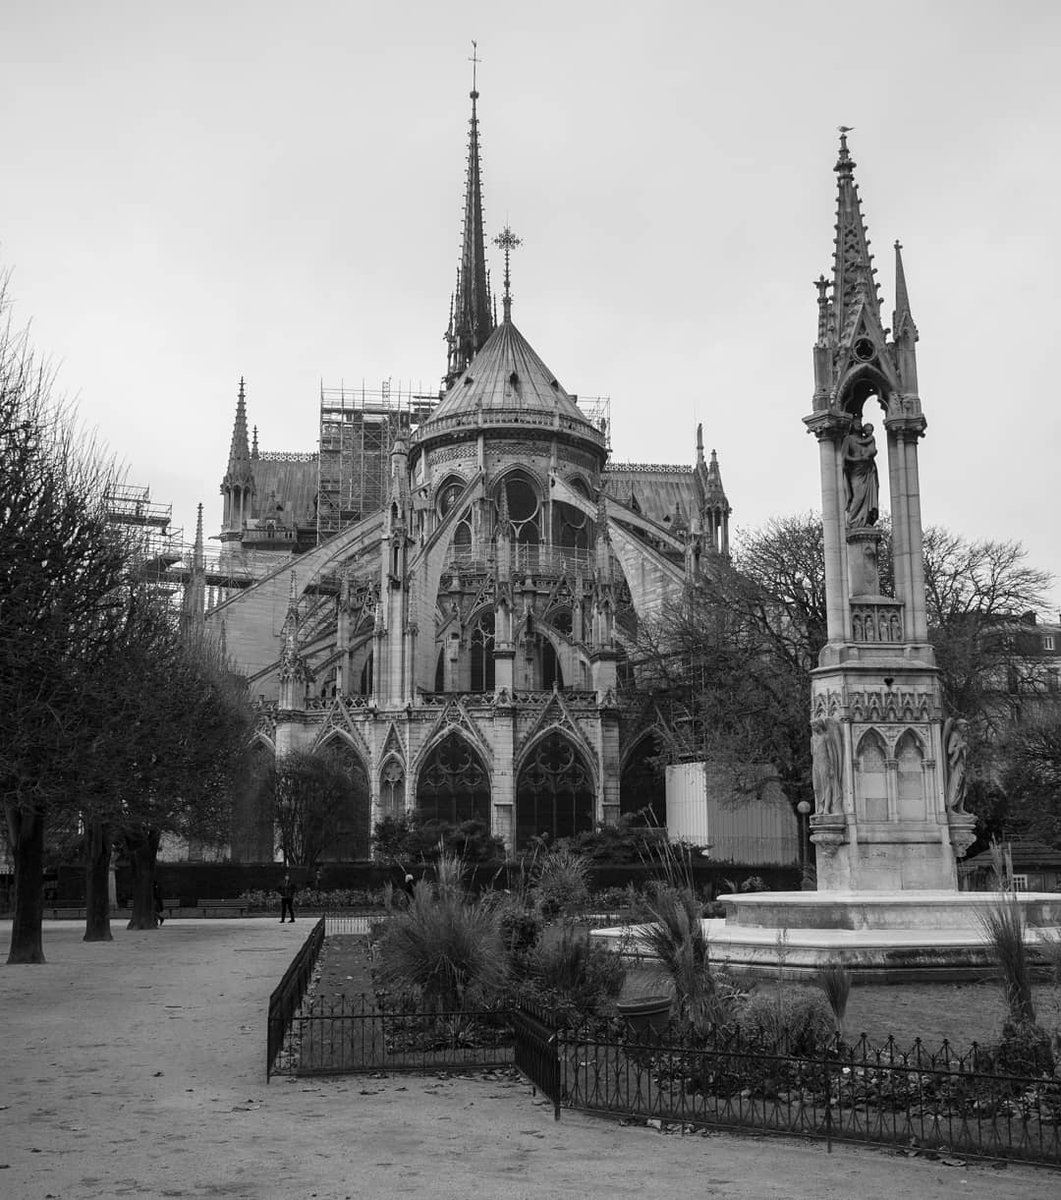 L'arrière de Notre Dame de Paris avec sa flèche.
Décembre 2018
.
.
#notredame #paris #notredamedeparis #bnw #parismaville #iloveparis #Patrimoinefrancais #patrimoine #pariszigzag  #jaimeparis #paristourisme #igersparis #igersfrance #lumixg80  #magnifiquefrance